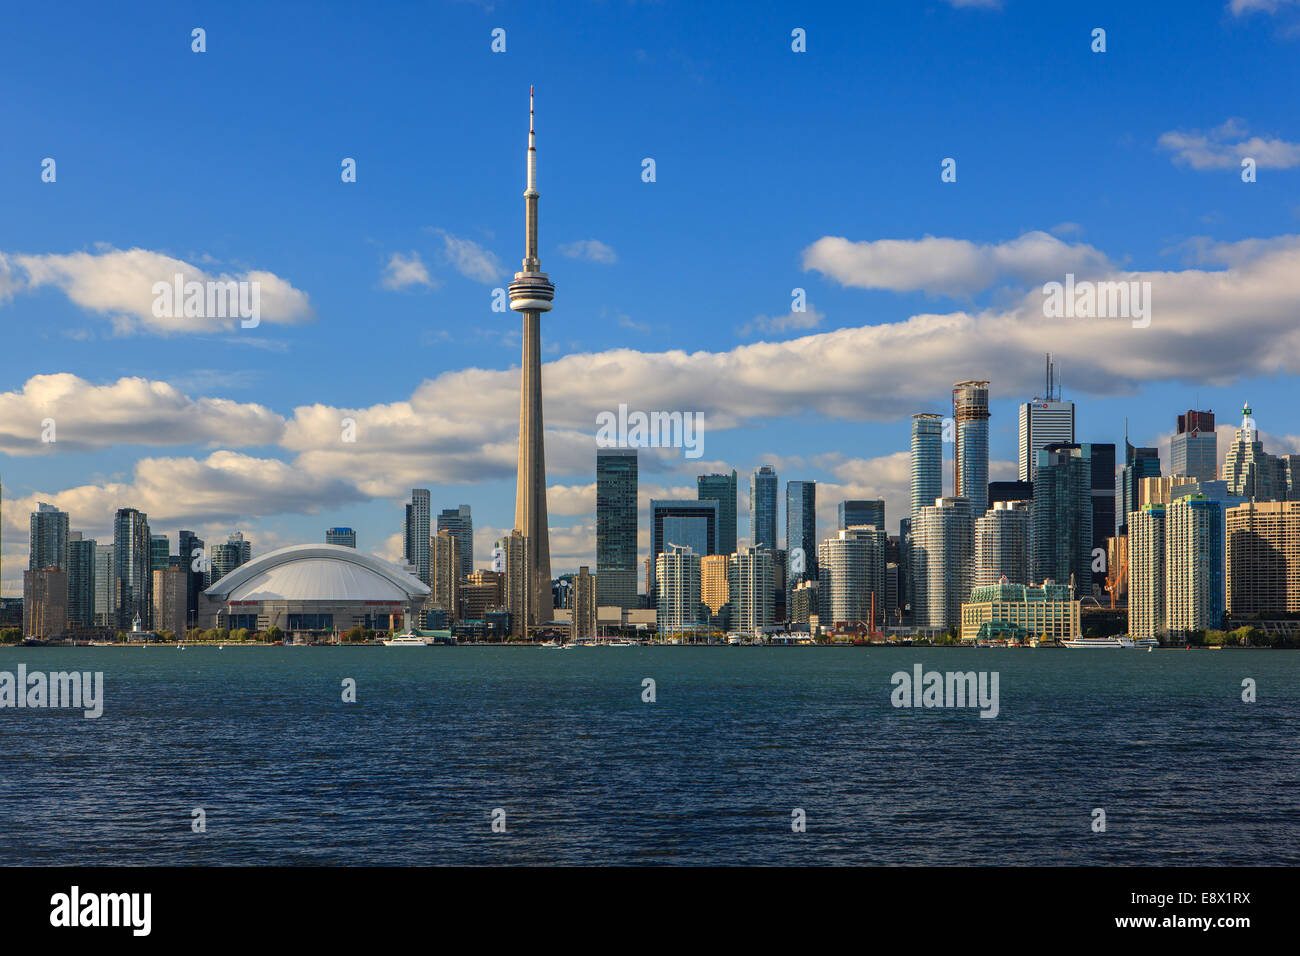 Famoso horizonte de Toronto con la Torre CN y el Centro Rogers tomadas de las Islas de Toronto. Foto de stock